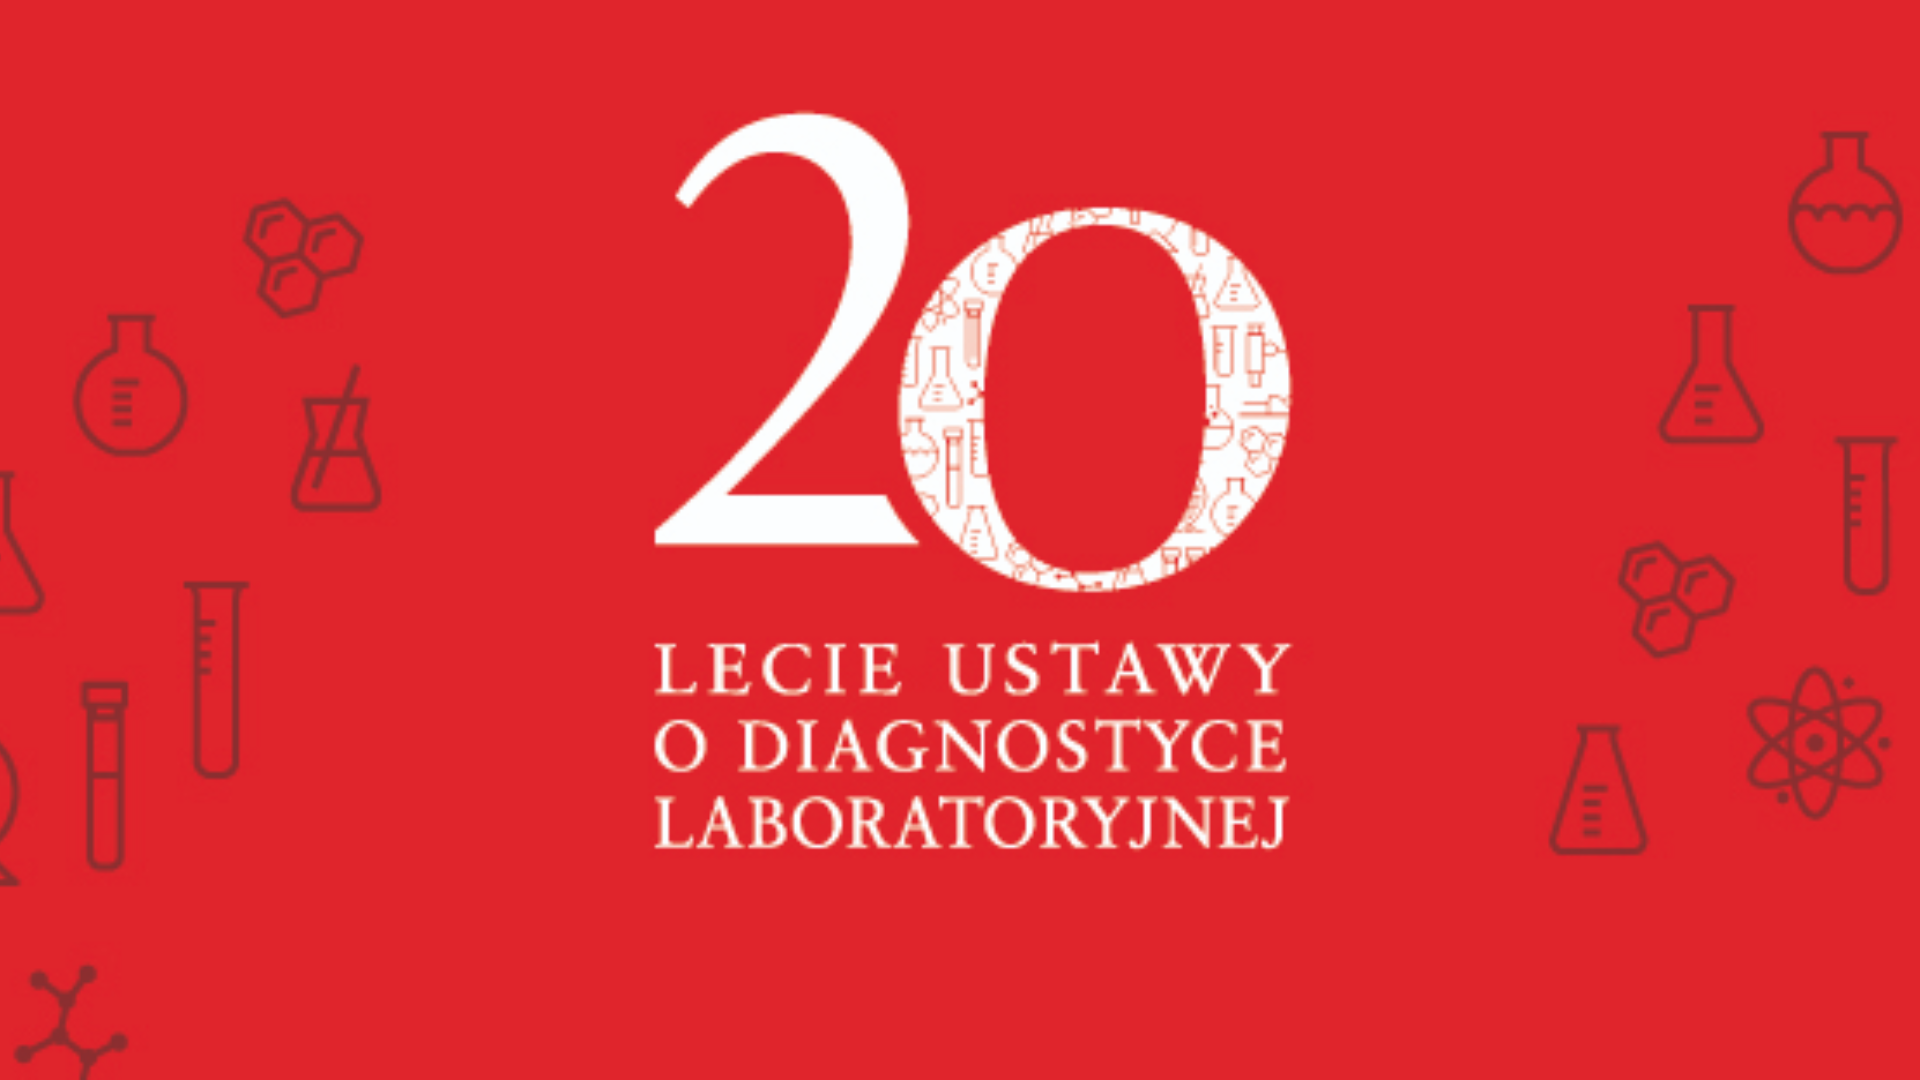 27 lipca 2001 roku Sejm uchwalił ustawę o diagnostyce laboratoryjnej, minęło 20 lat. Tymczasem diagności laboratoryjni nadal czekają na nową ustawę.